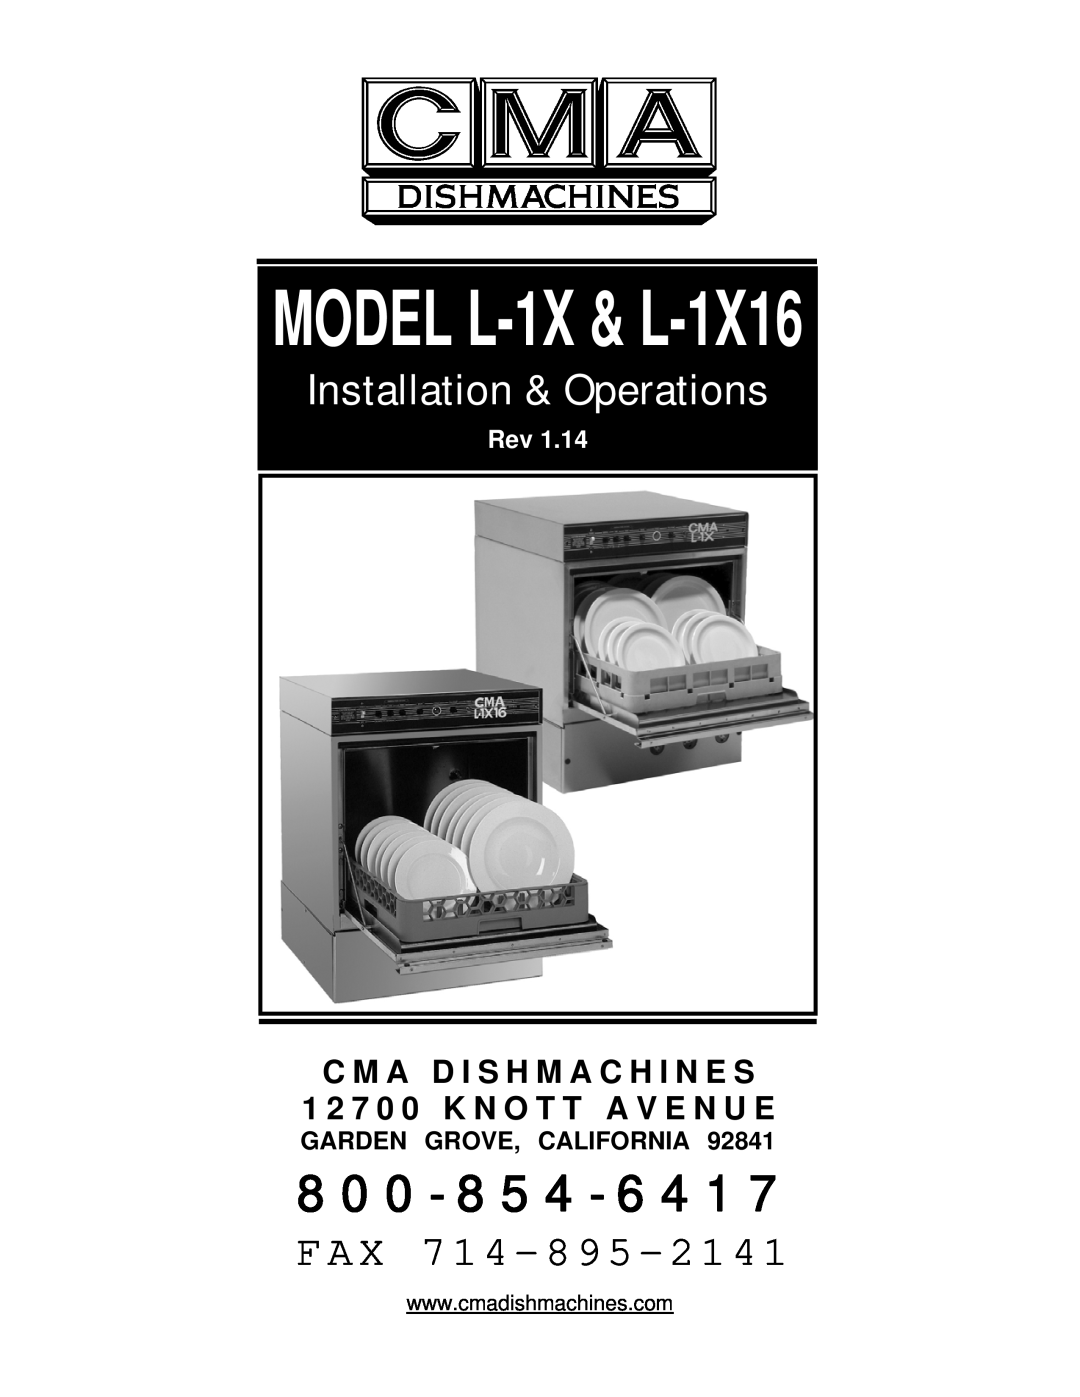 CMA Dishmachines L-1X16 manual C M A D I S H M A C H I N E S, 1 2 7 0 0 K N O T T A V E N U E, Garden Grove, California 